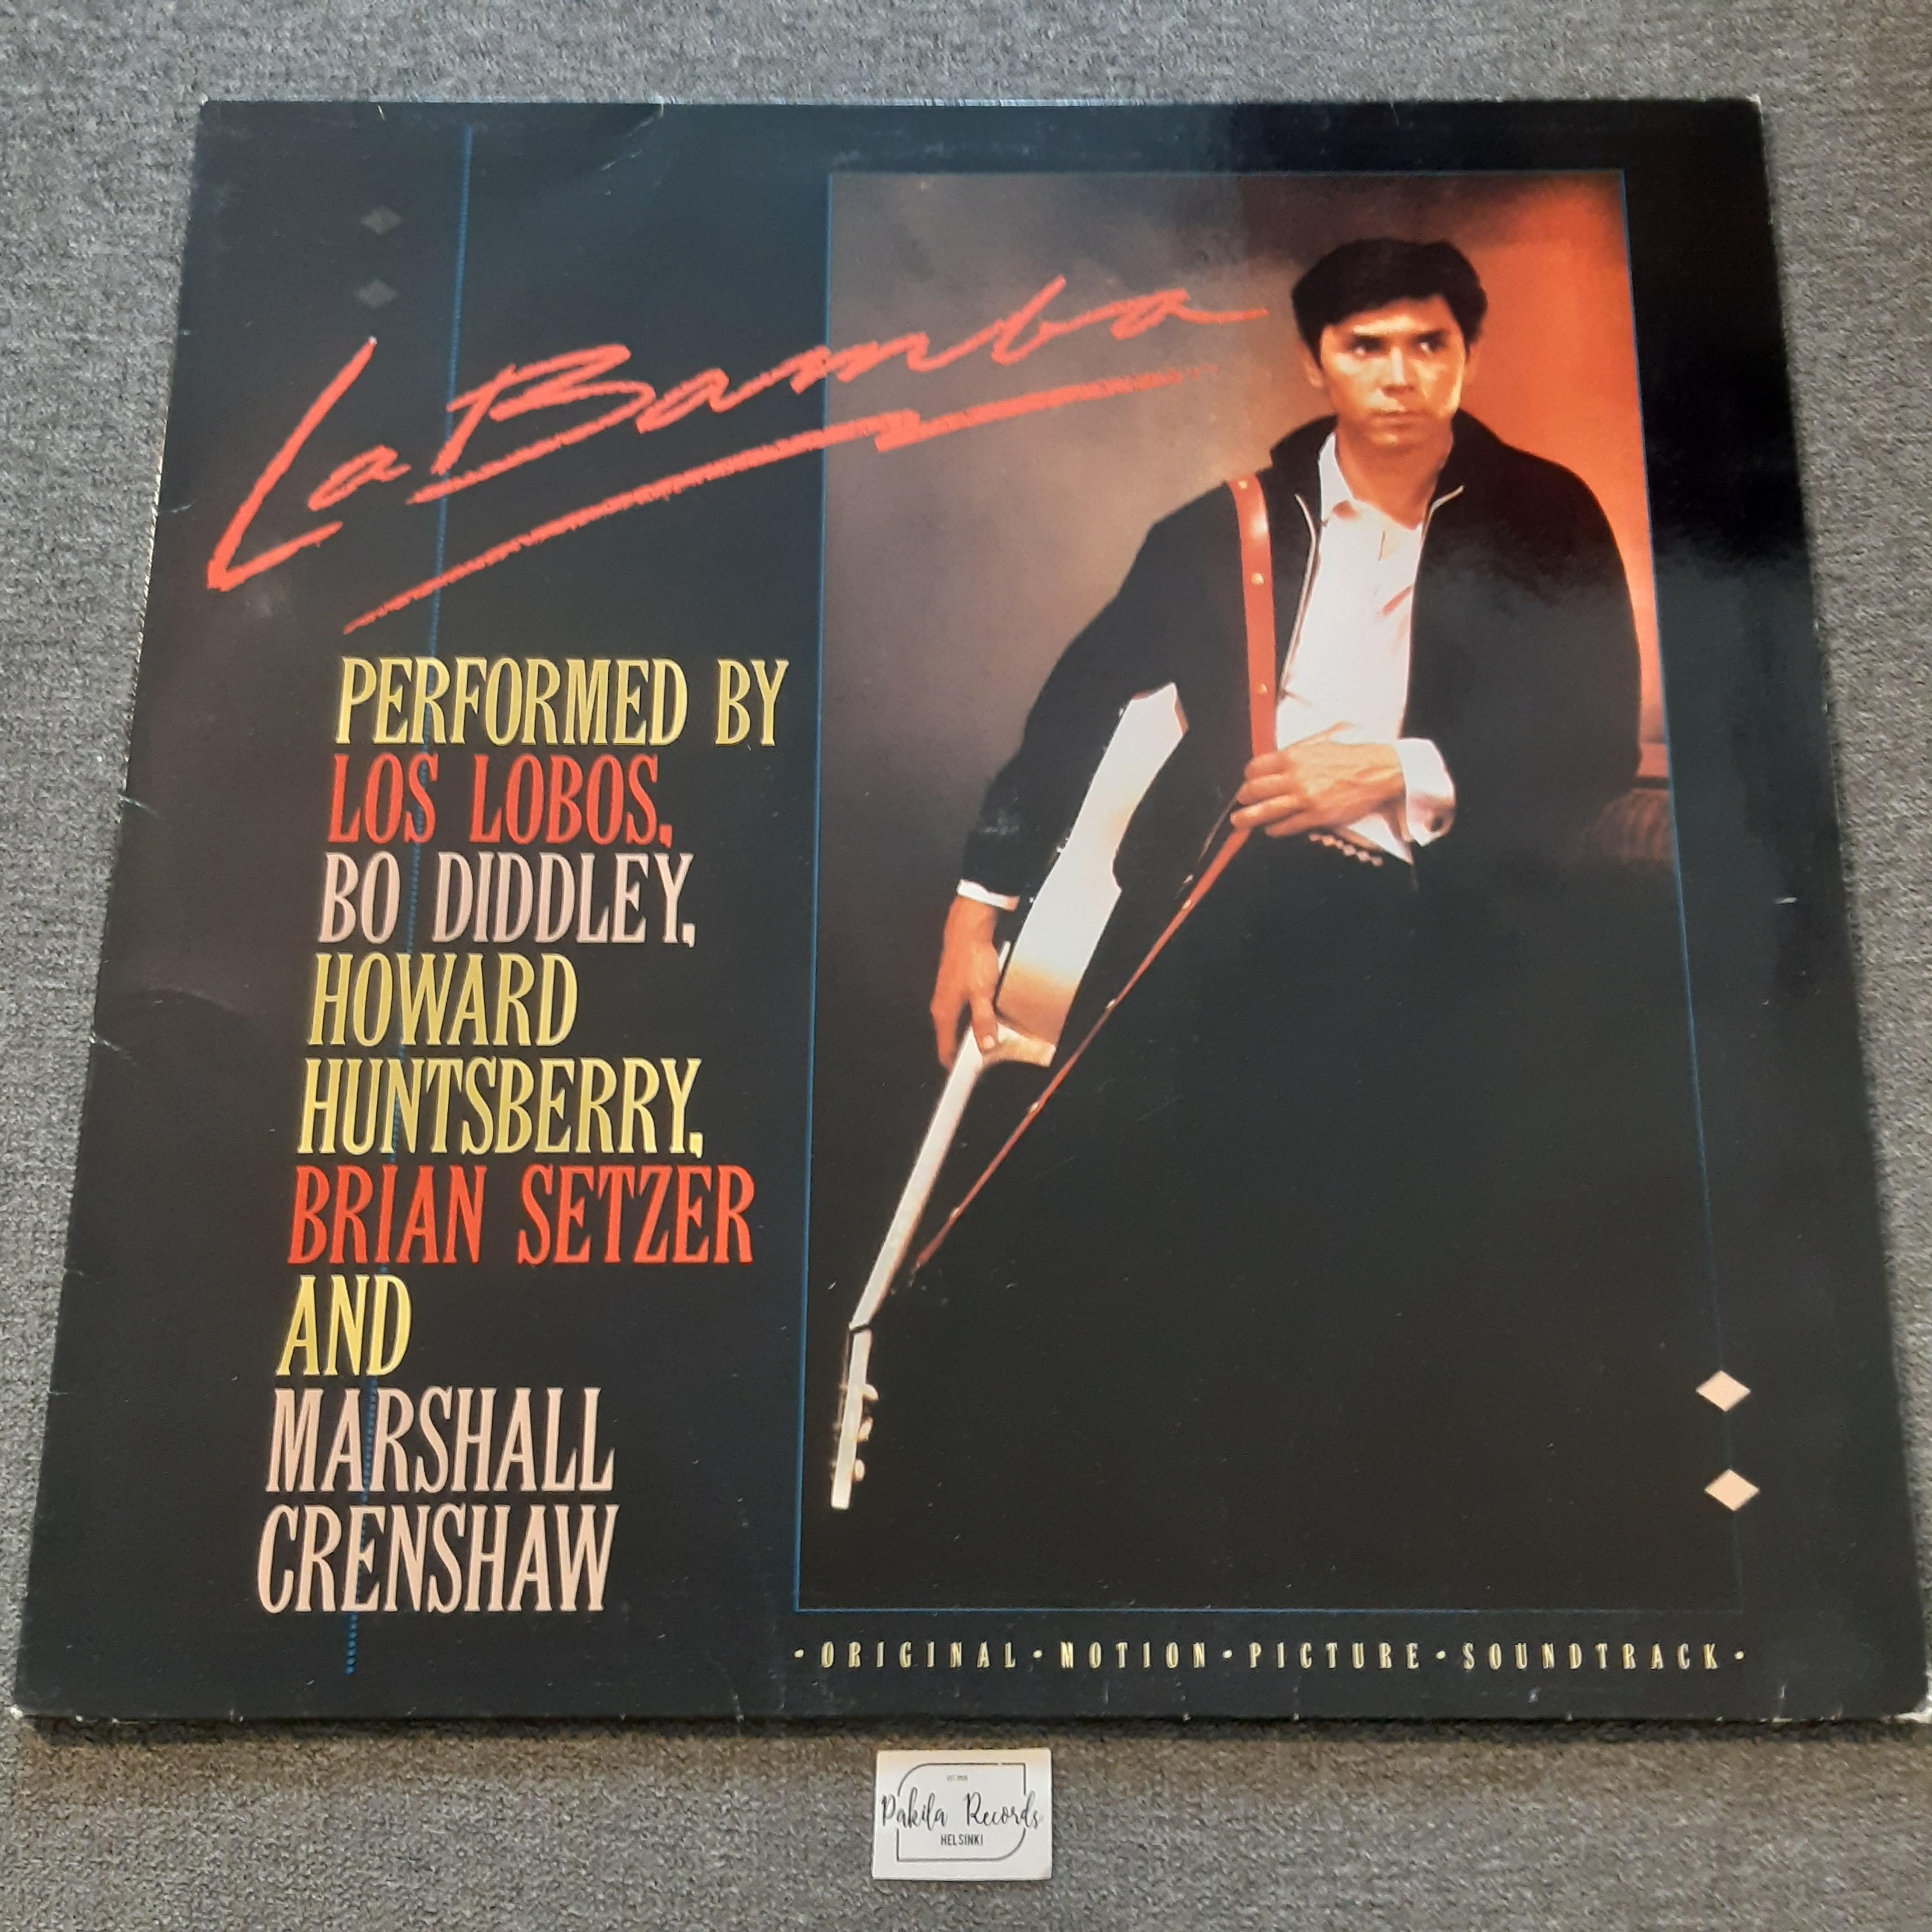 La Bamba - Original Motion Picture Soundtrack - LP (käytetty)